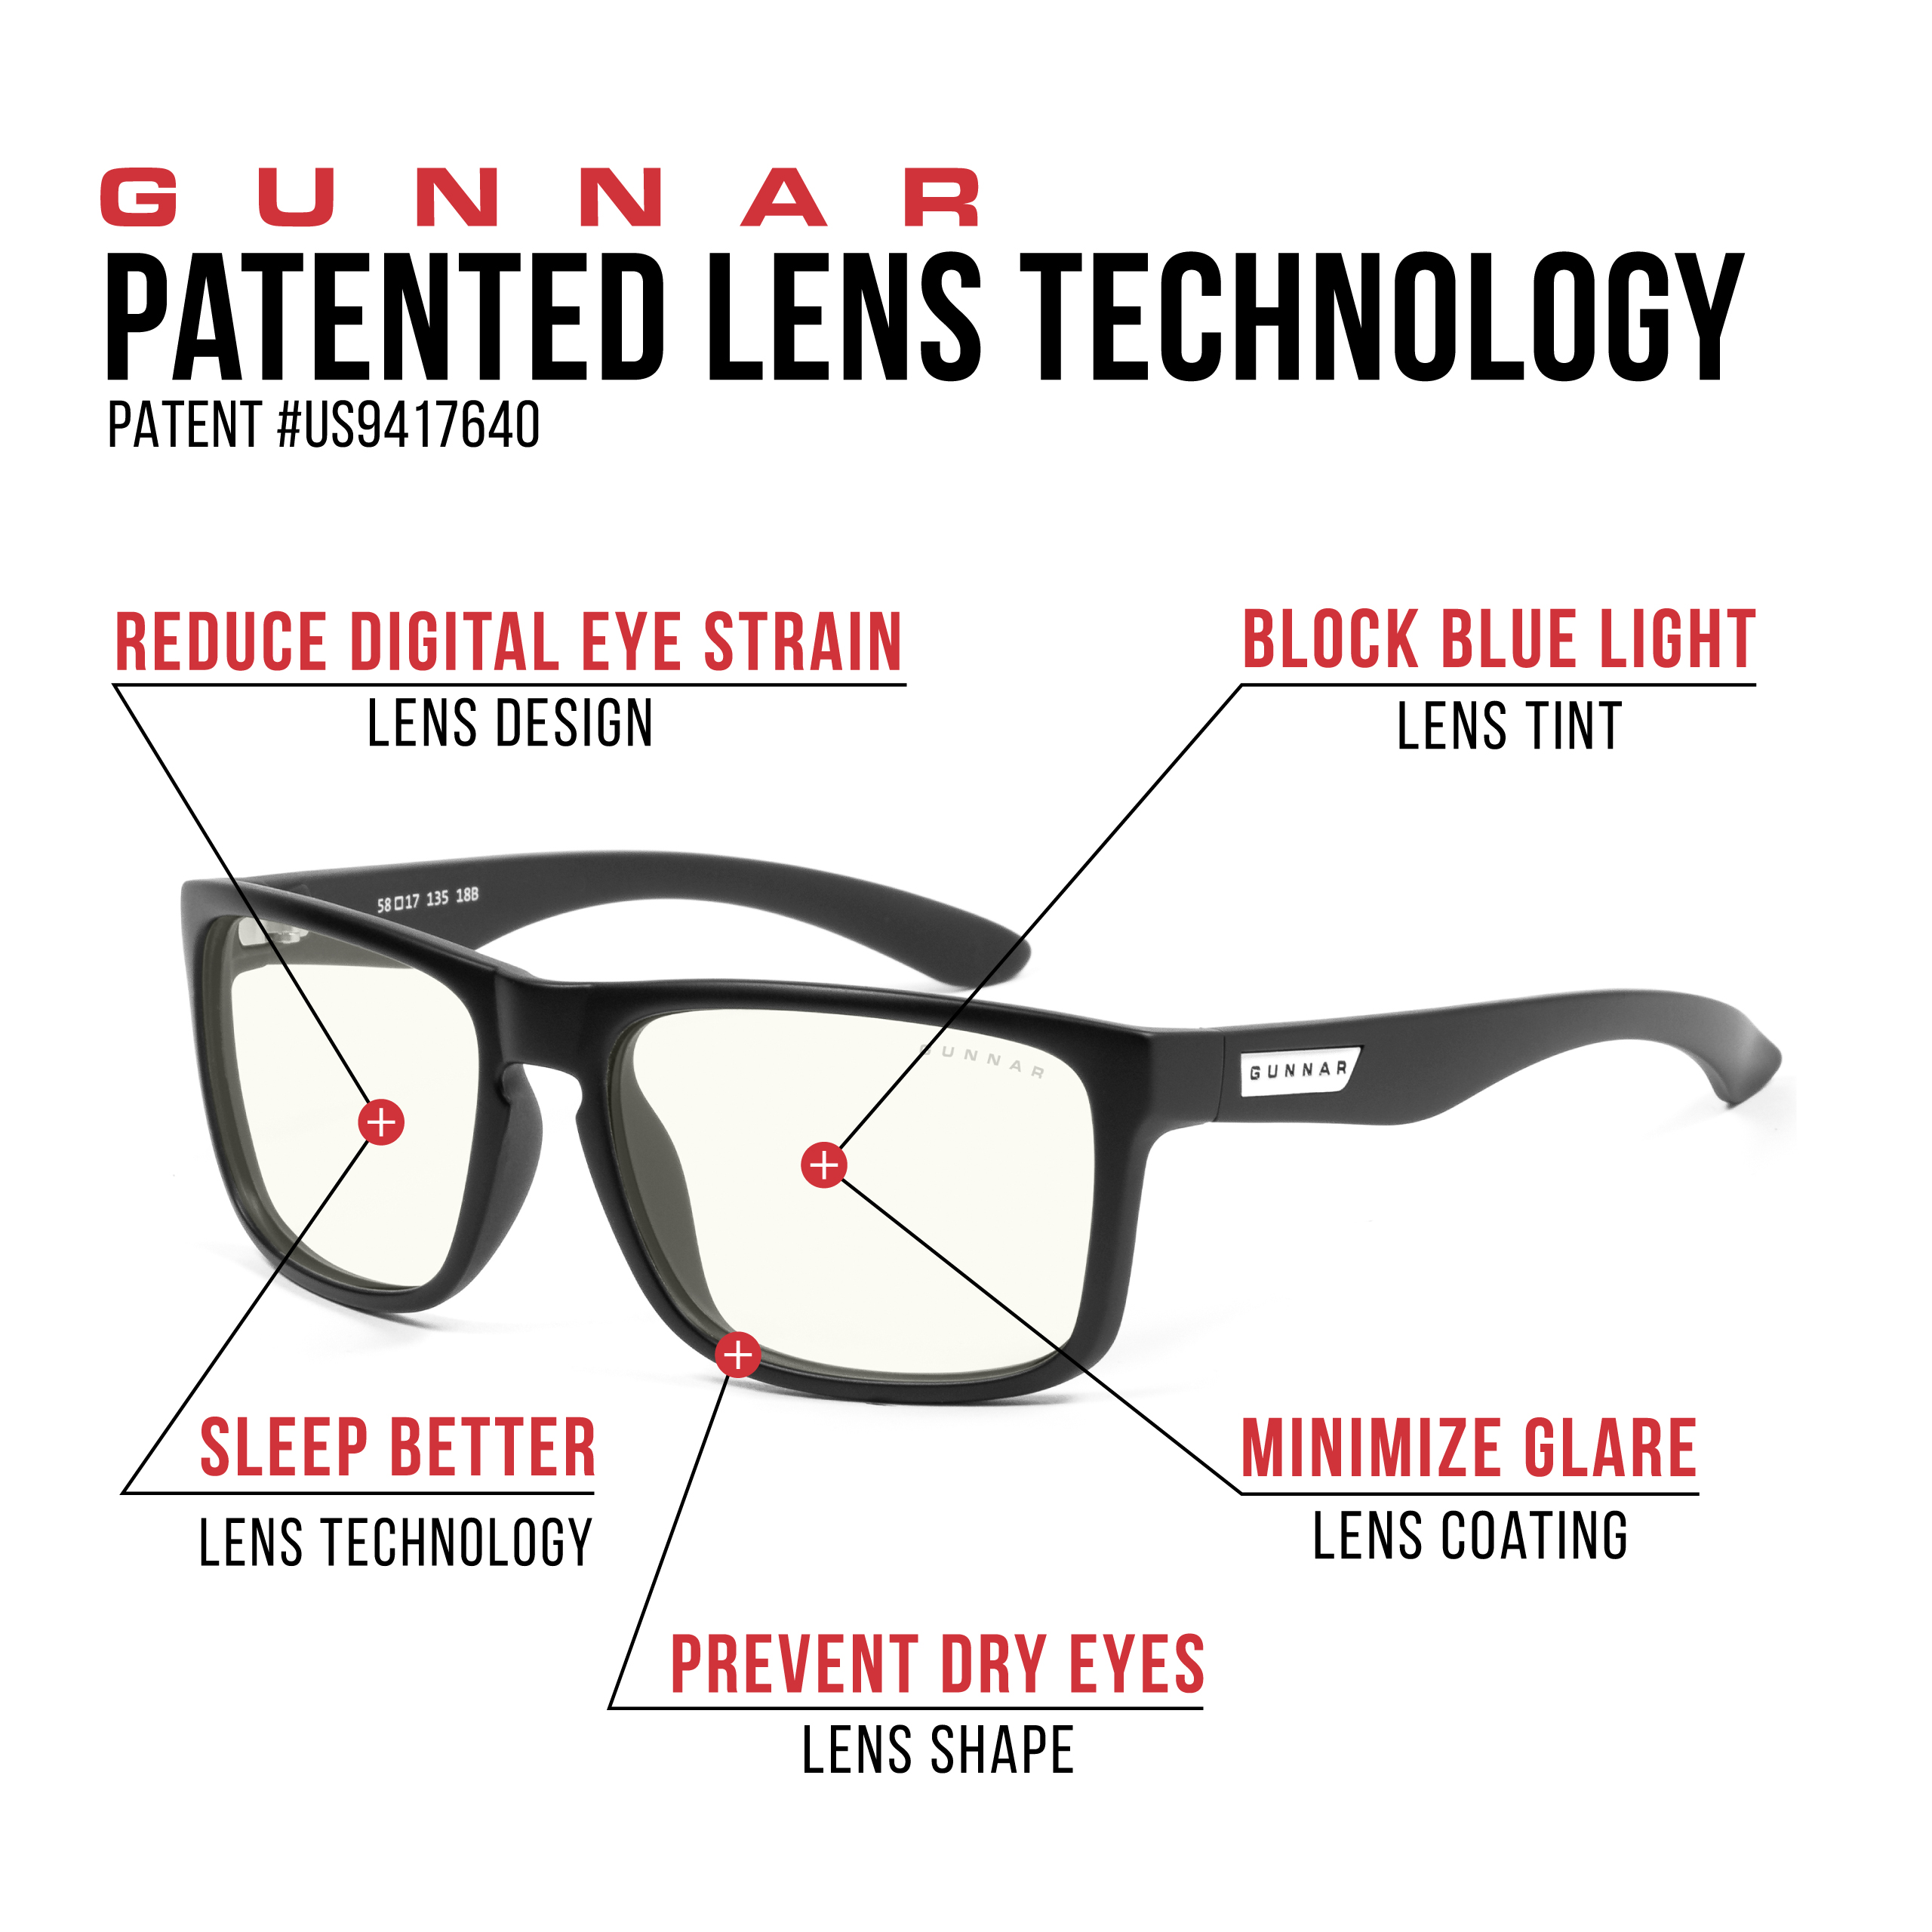 GUNNAR Intercept, Onyx Rahmen, Brille Premium, Blaulichtfilter, UV-Schutz, Clear Gaming Tönung